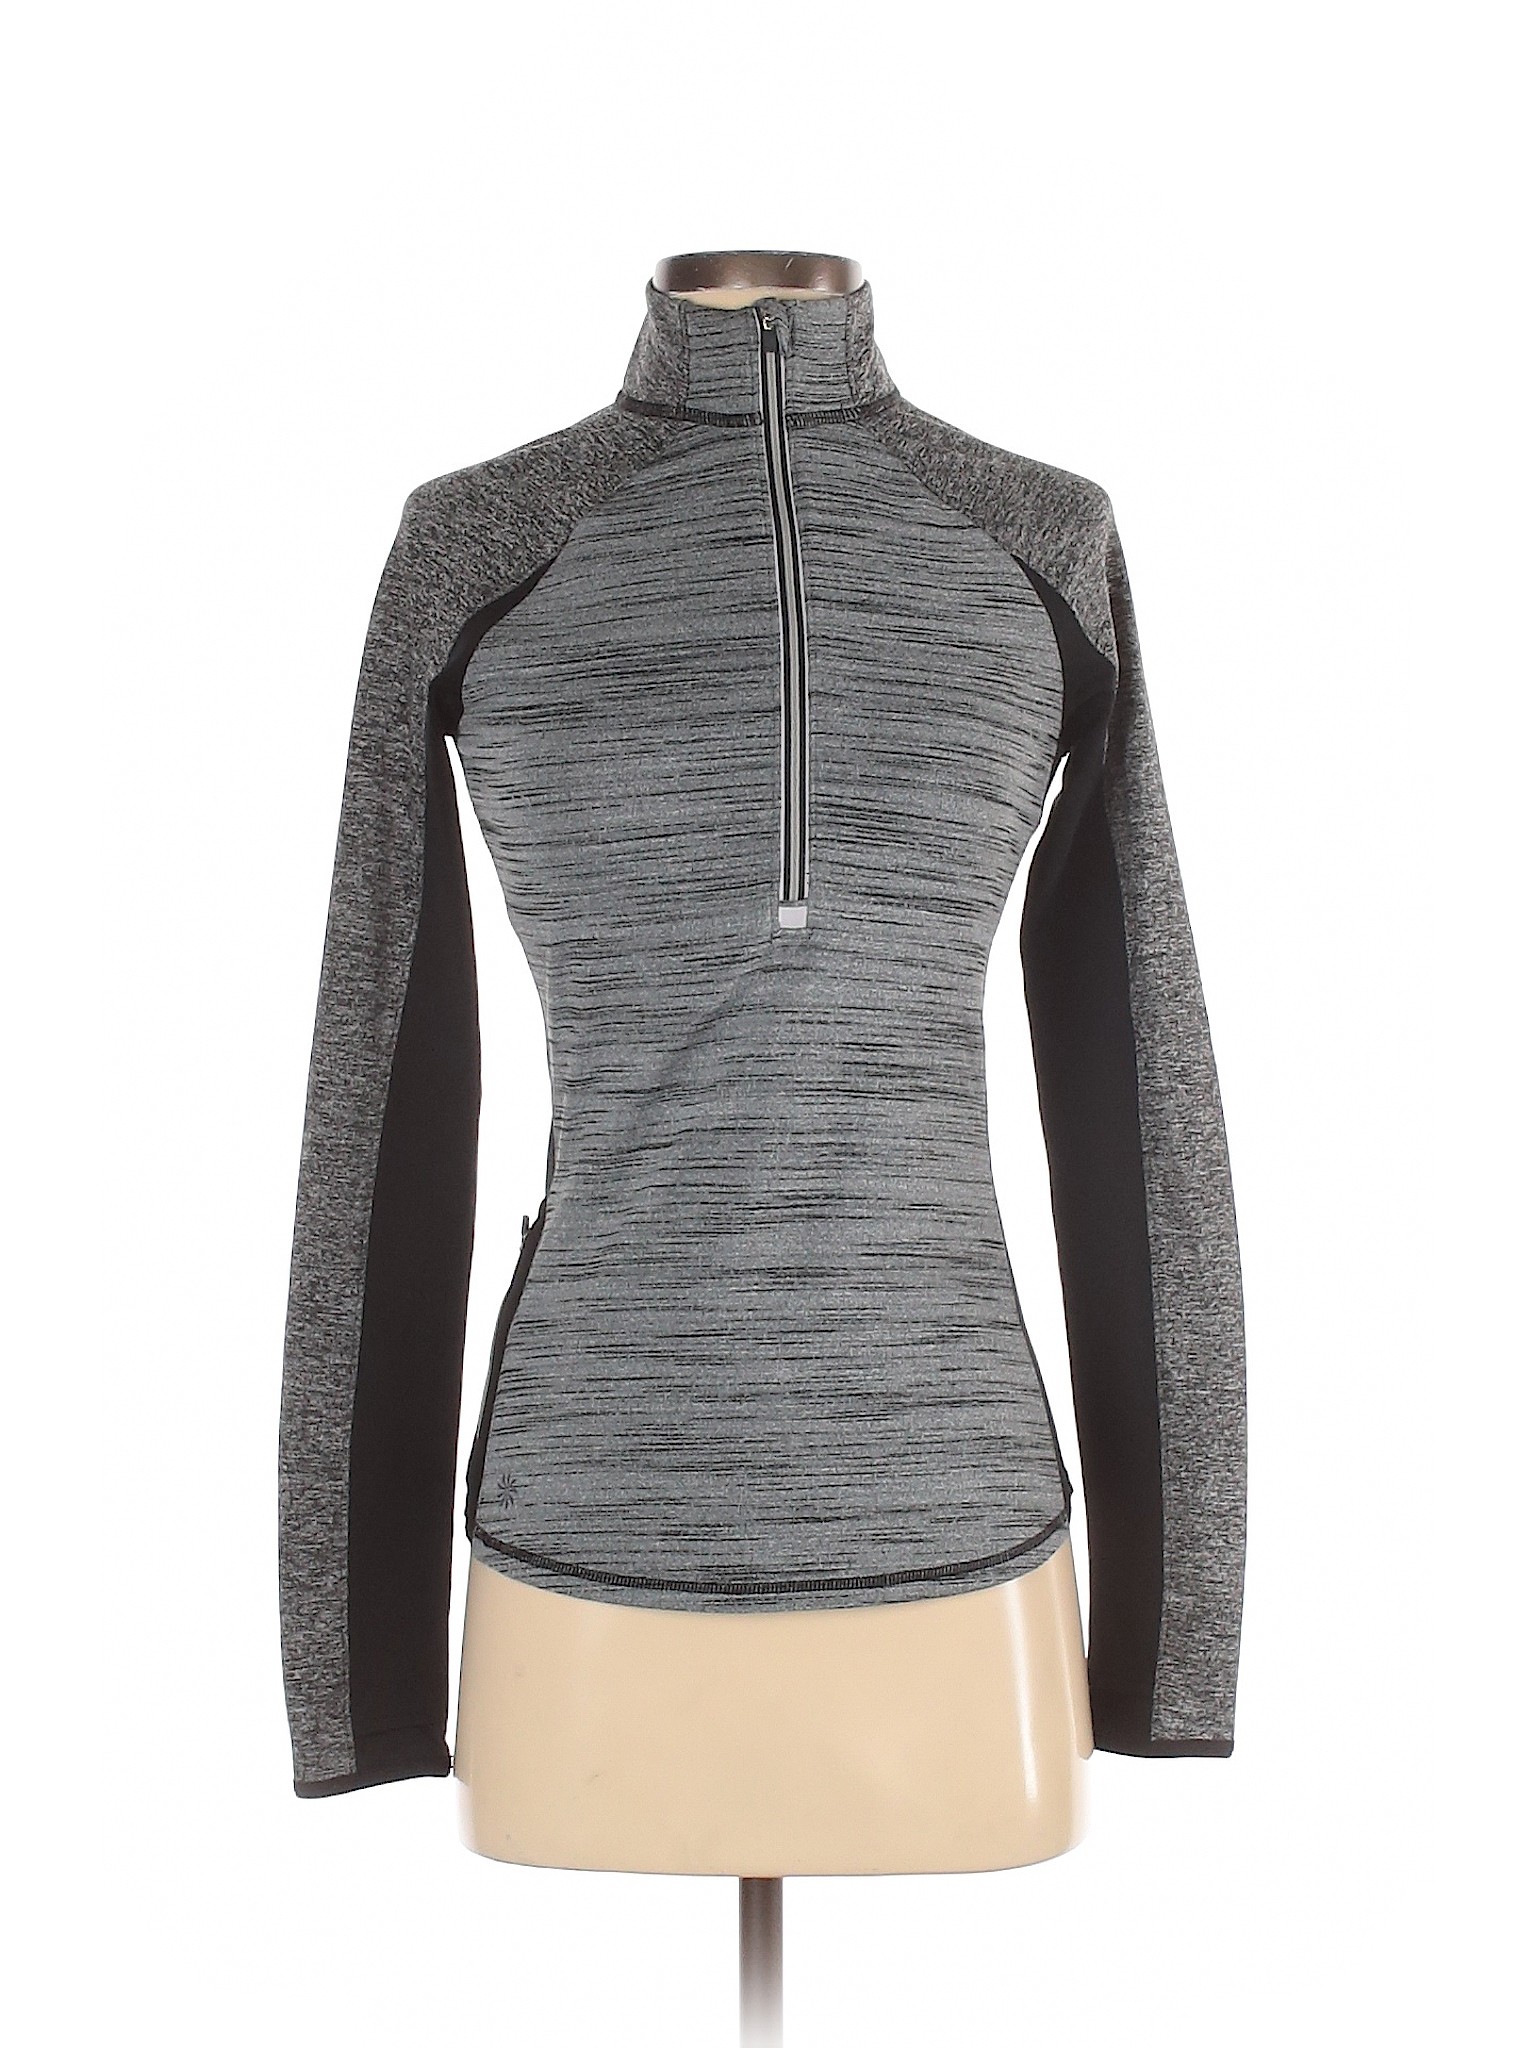 Athleta Women Gray Track Jacket XXS | eBay